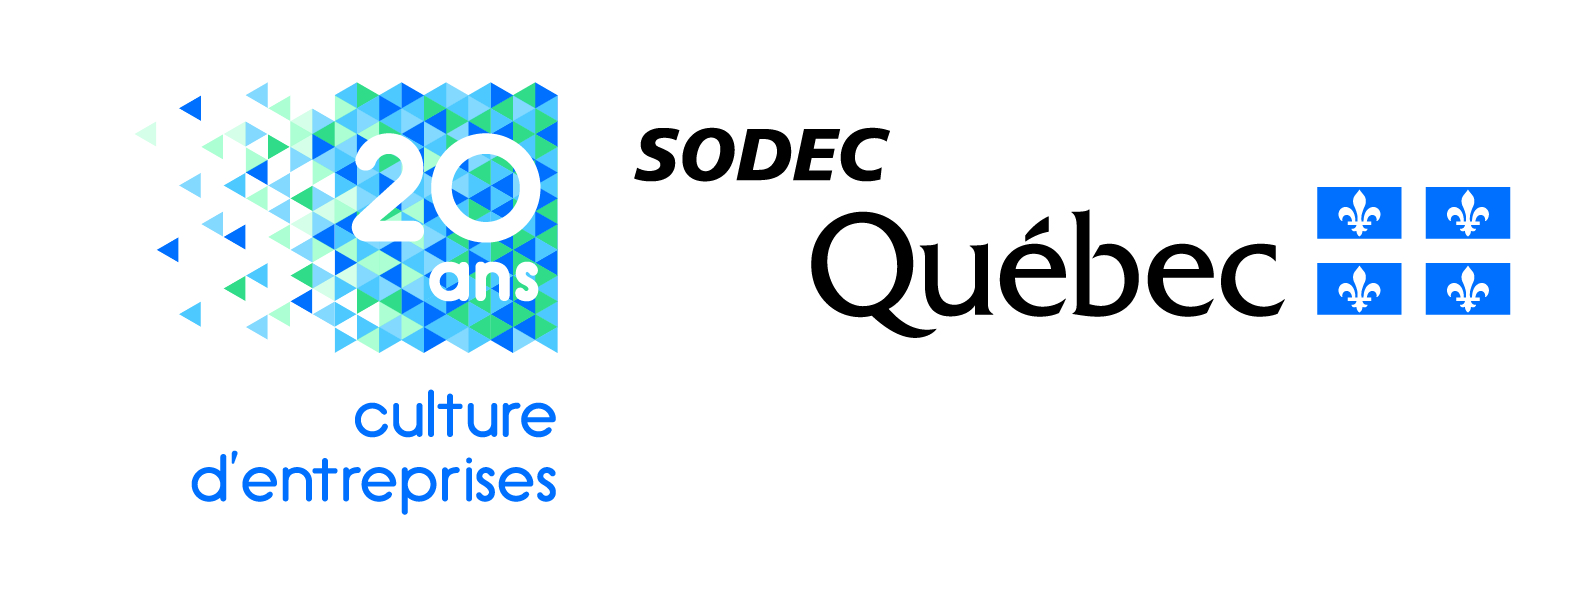 La SODEC lance un concours pour souligner ses 20 ans